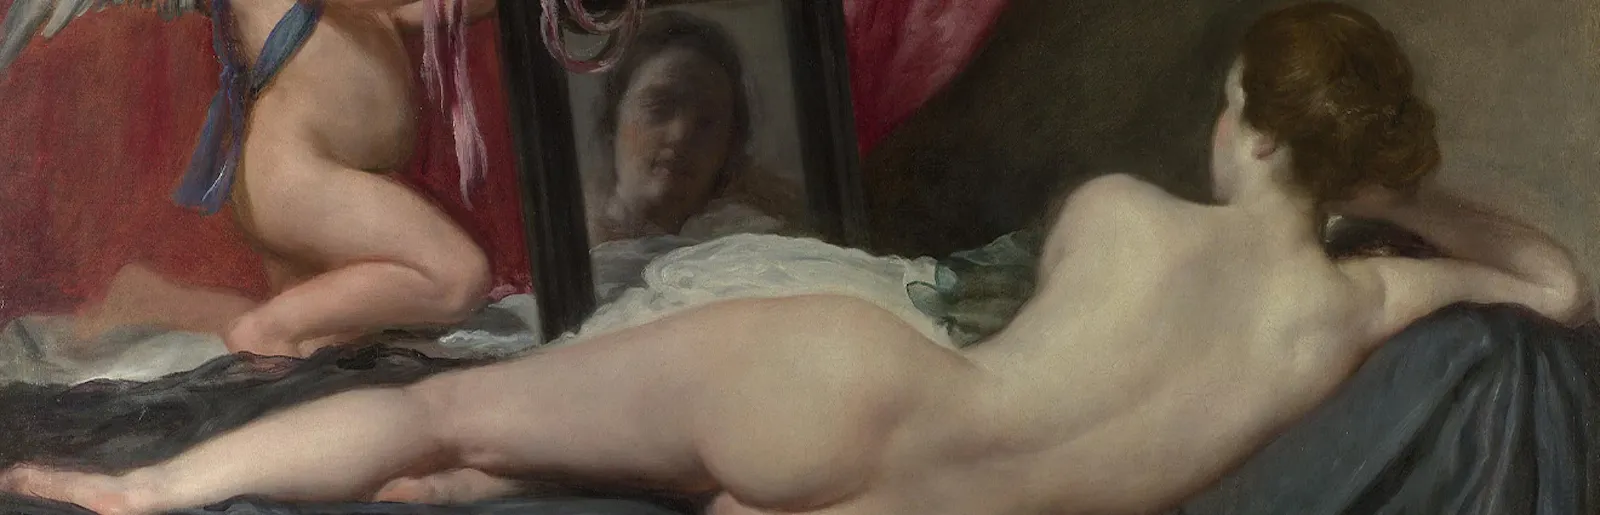 In Velázquez "Venus vor dem Spiegel" liegt eine junge Frau mit dem Rücken zur Betrachterin vor dem Spiegel und betrachtet ihr Bild. Neben dem Spiegel ist Amor zu sehen, der keinen Pfeil hält.